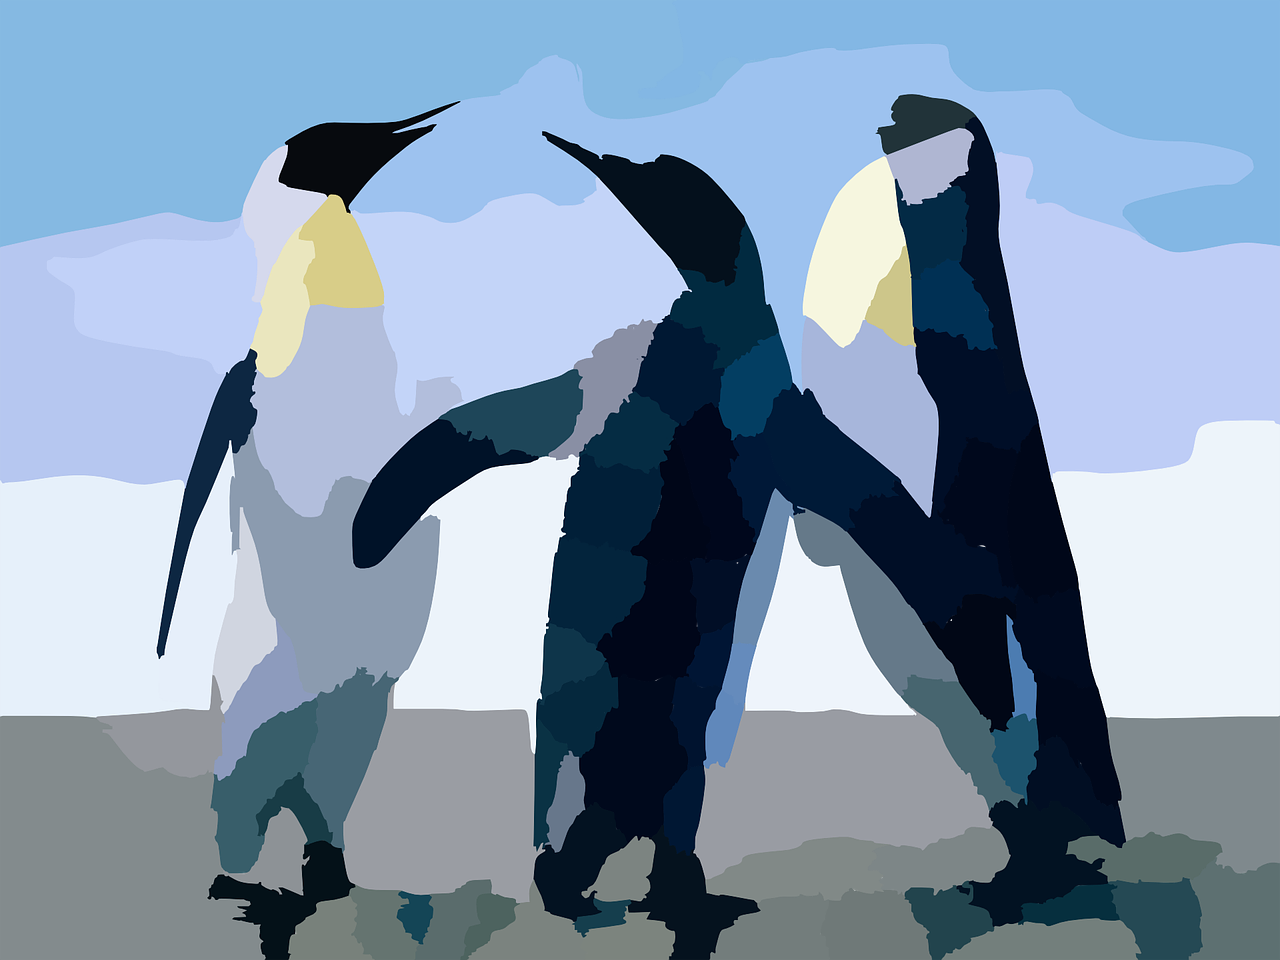 Pingvinas, Vandens, Paukščiai, Antartica, Gyvenimas, Grupė, Trys, Juoda, Balta, Mėlynas